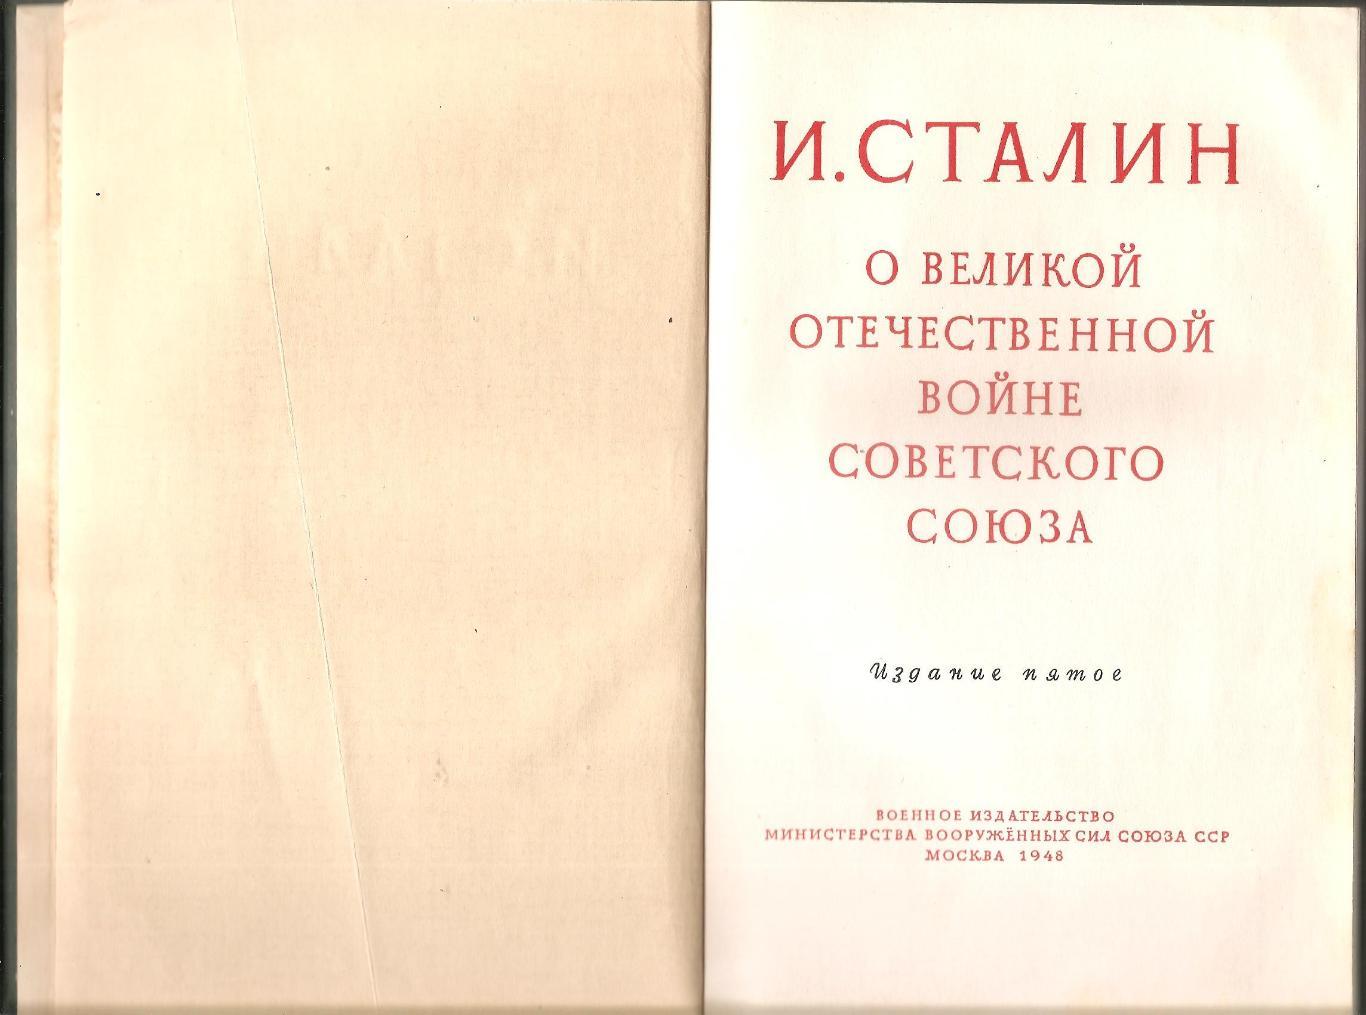 И. Сталин О Великой Отечественной войне Советского союза. 1948 г. 1